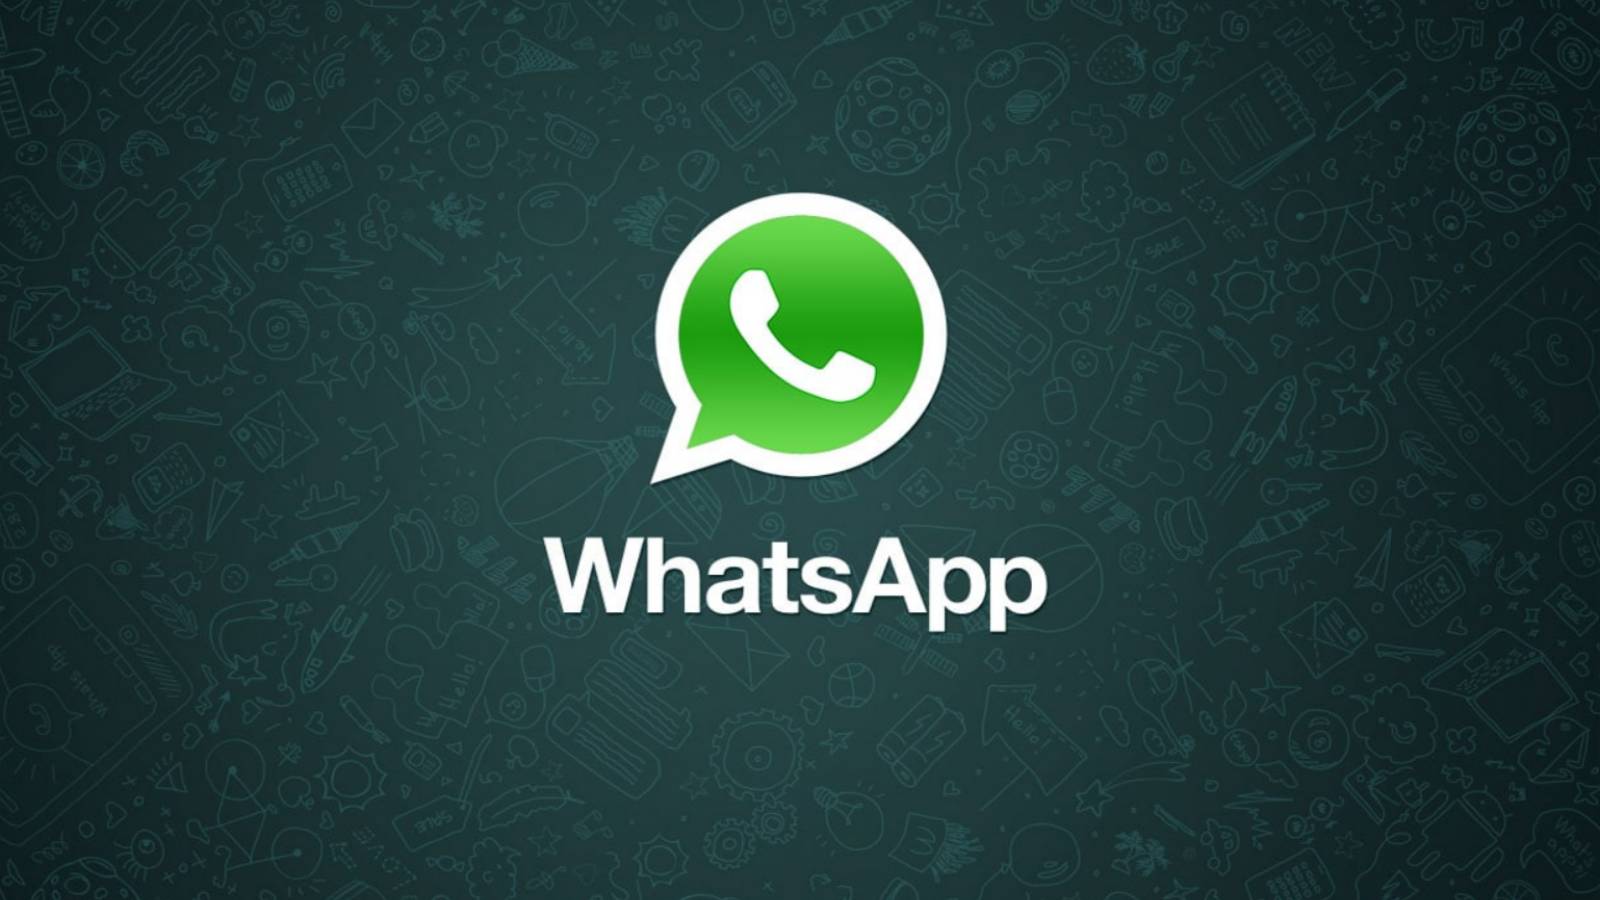 WhatsApp ressource